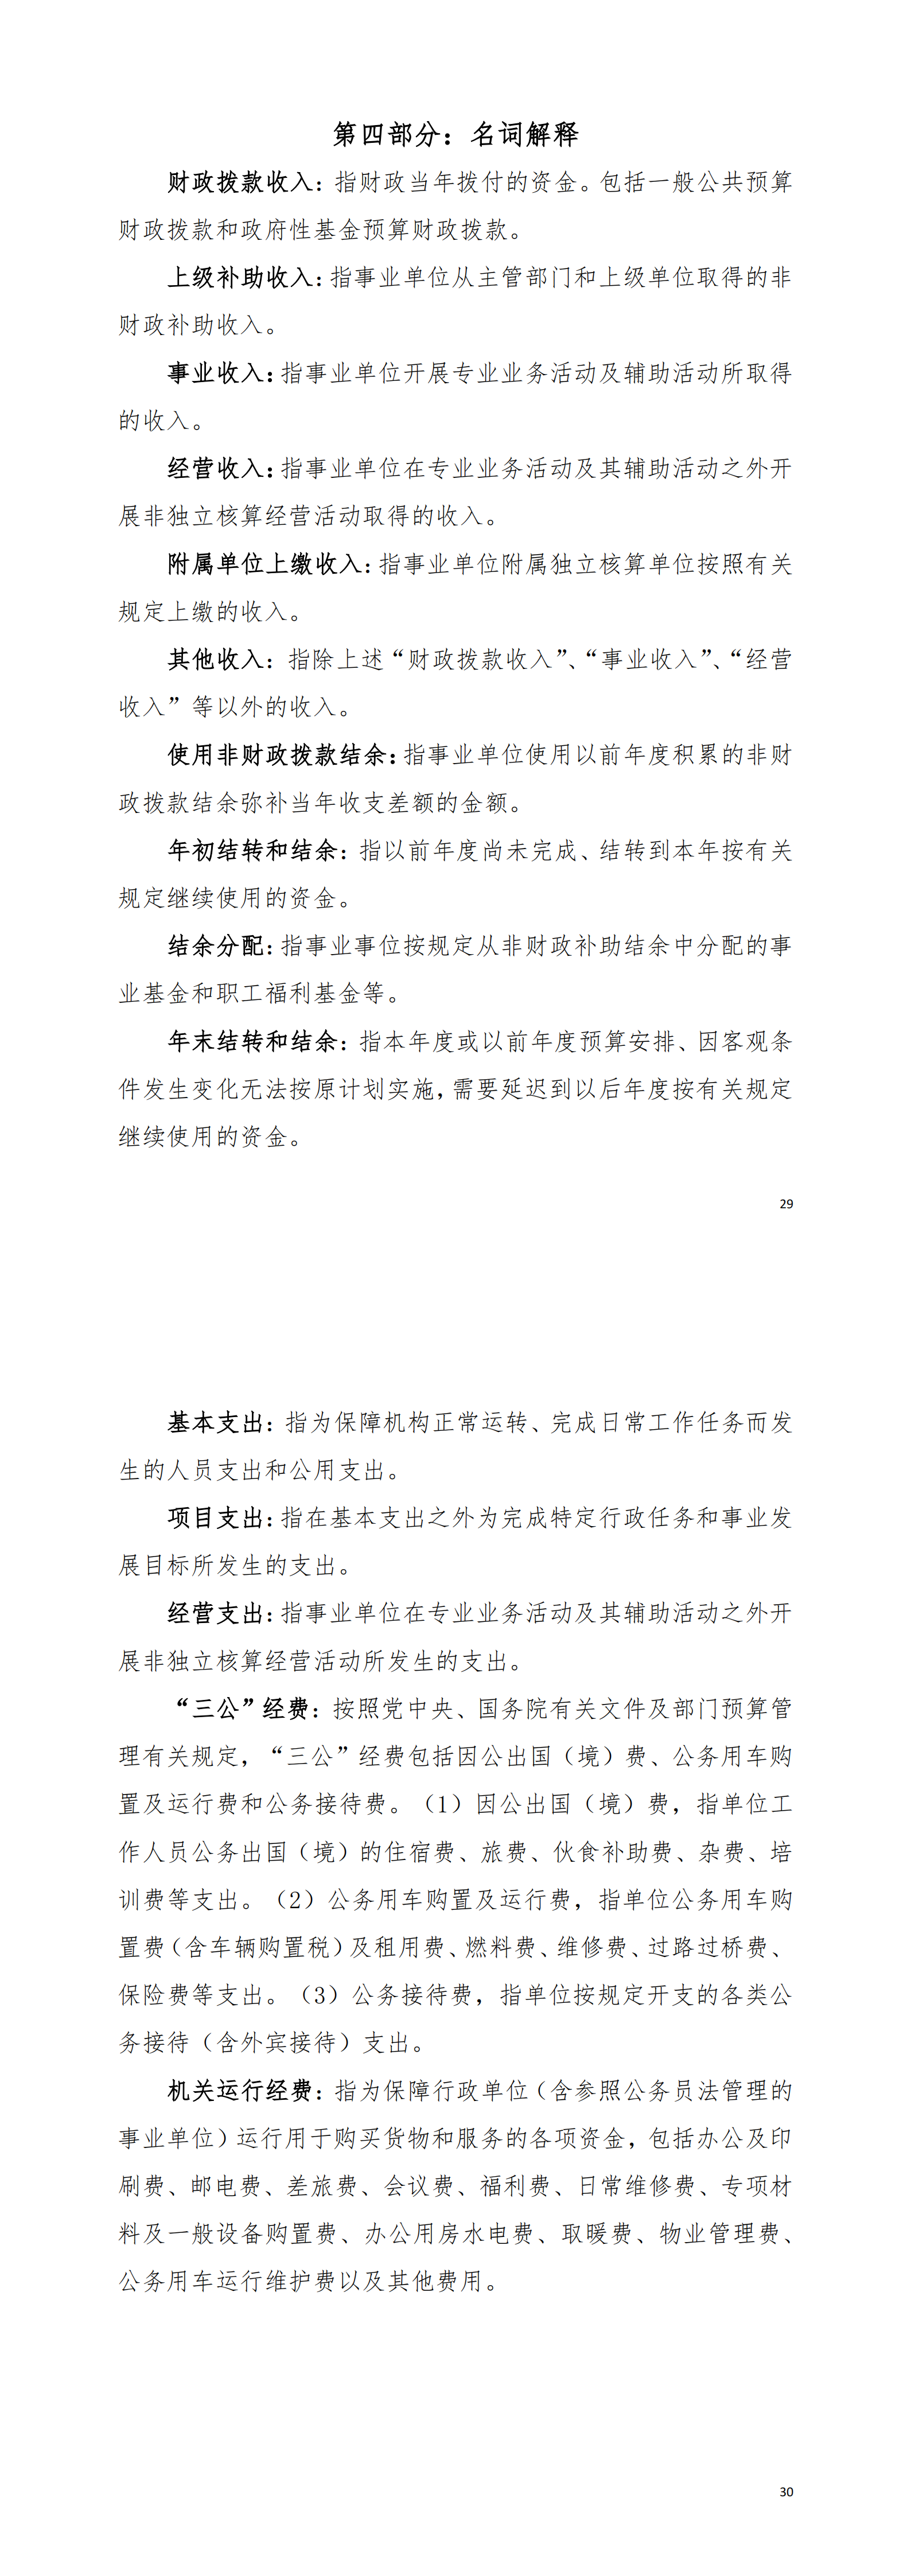 2021年中国共产党阳江高新技术产业开发区委员会组织部部门决算_02.png